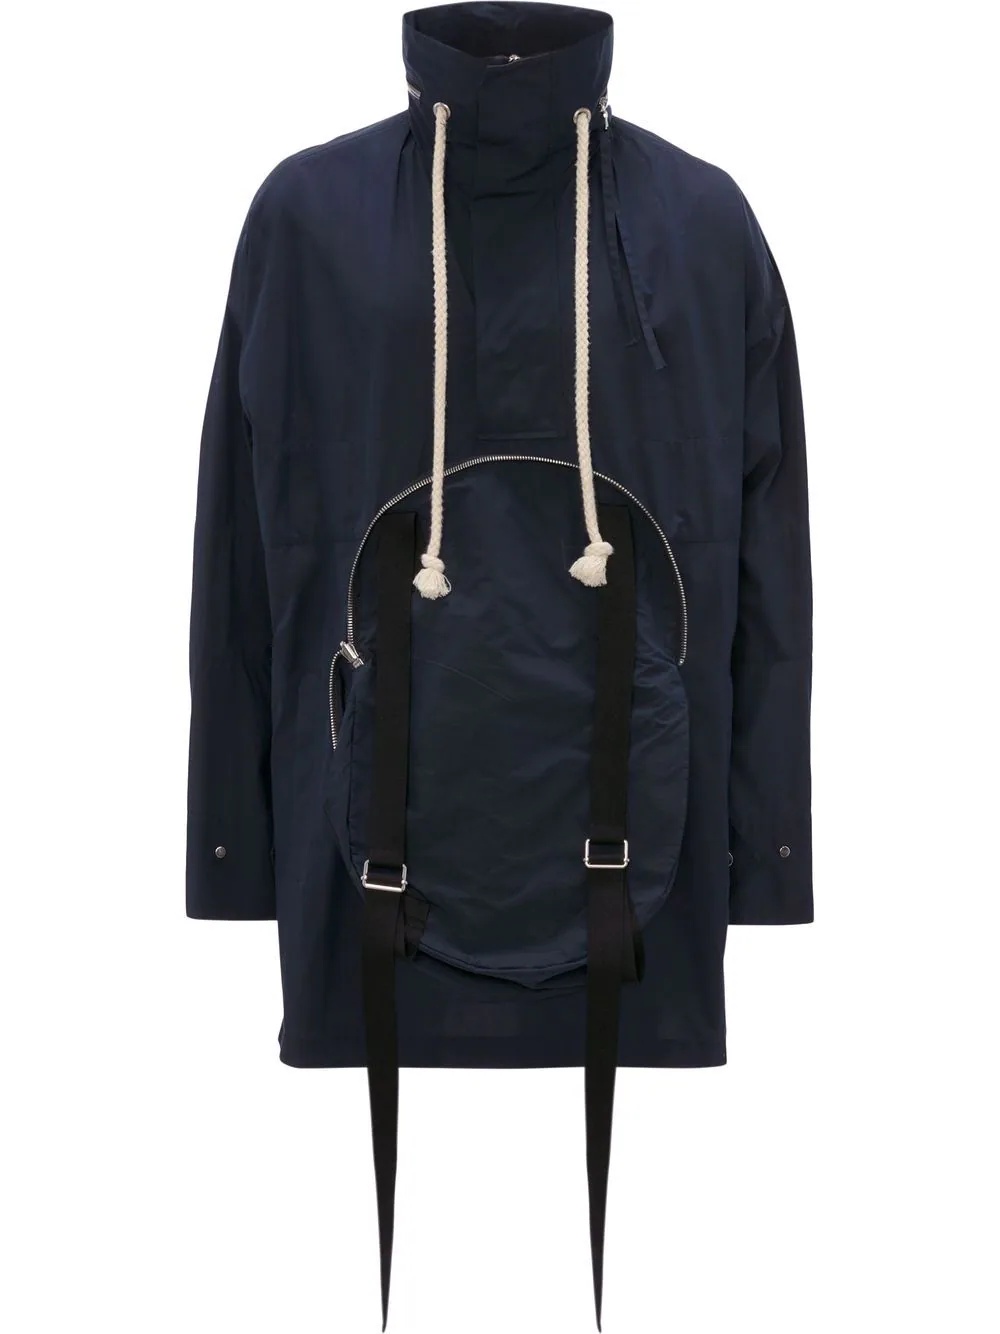 cap-style pocket jacket - 6